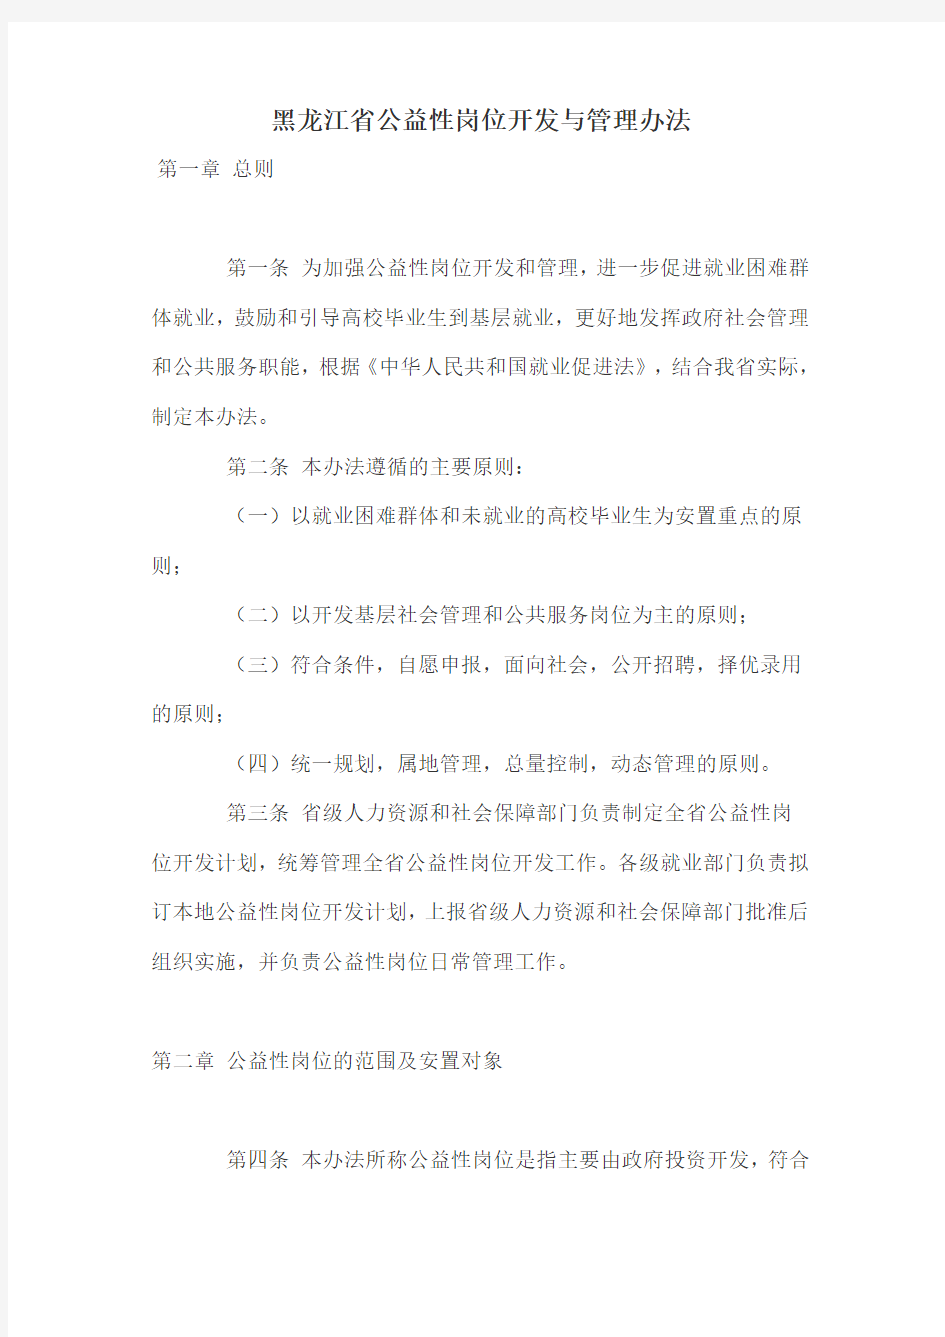 黑龙江省公益性岗位开发与管理办法